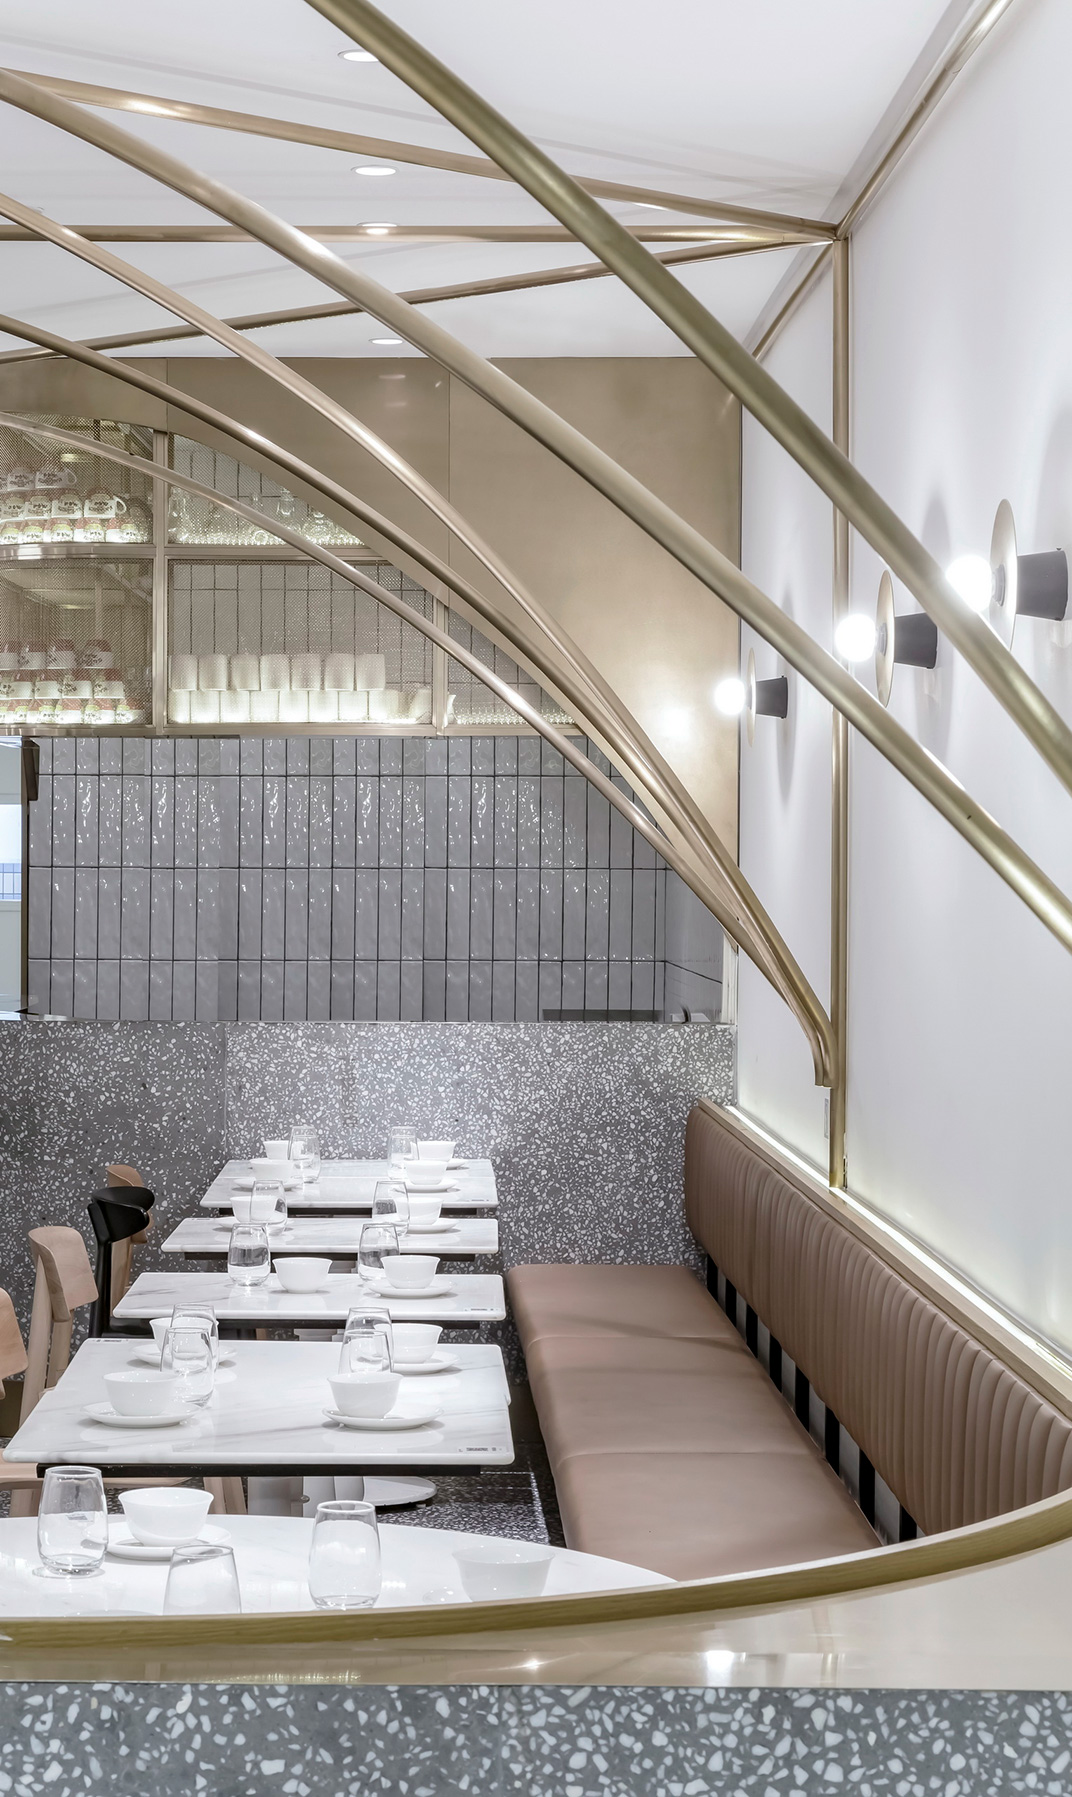 北京 茶餐厅 水磨石 不锈钢 平面图纸  餐厅LOGO VI设计 空间设计 视觉餐饮